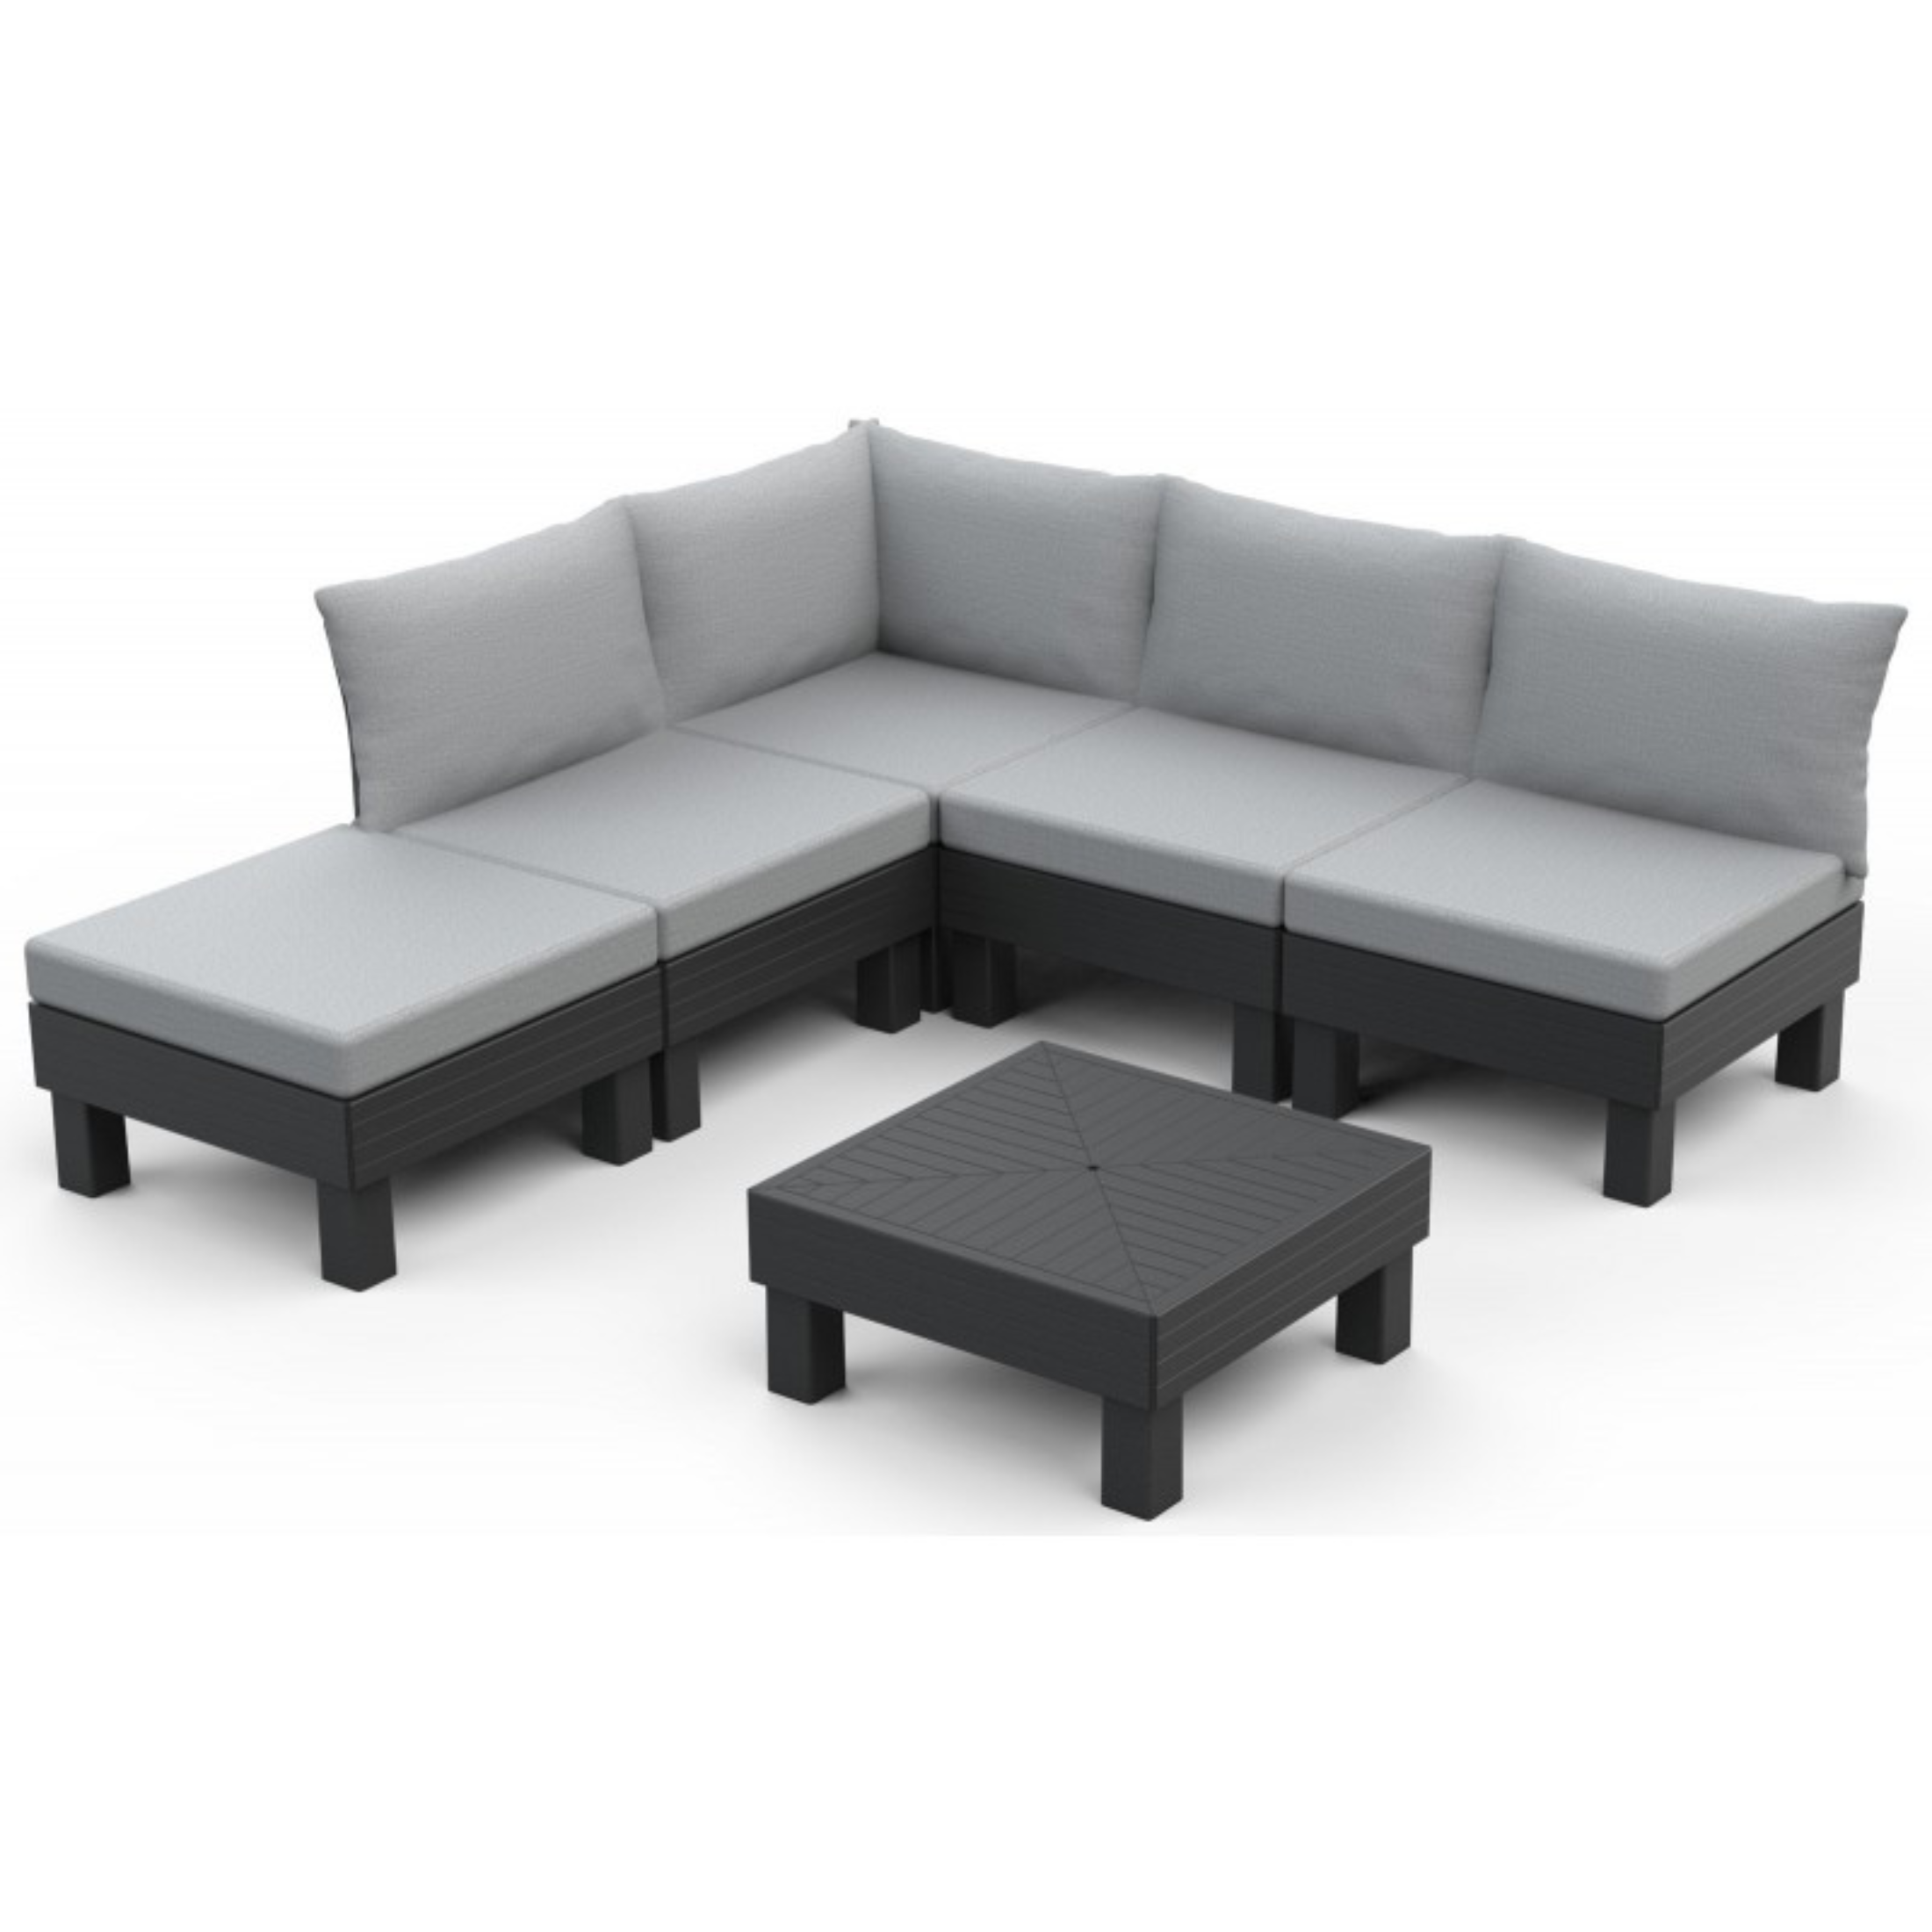 Conjunto de jardín 5 plazas "Elements" sofá 2 sillones y 1 mesa de centro modular